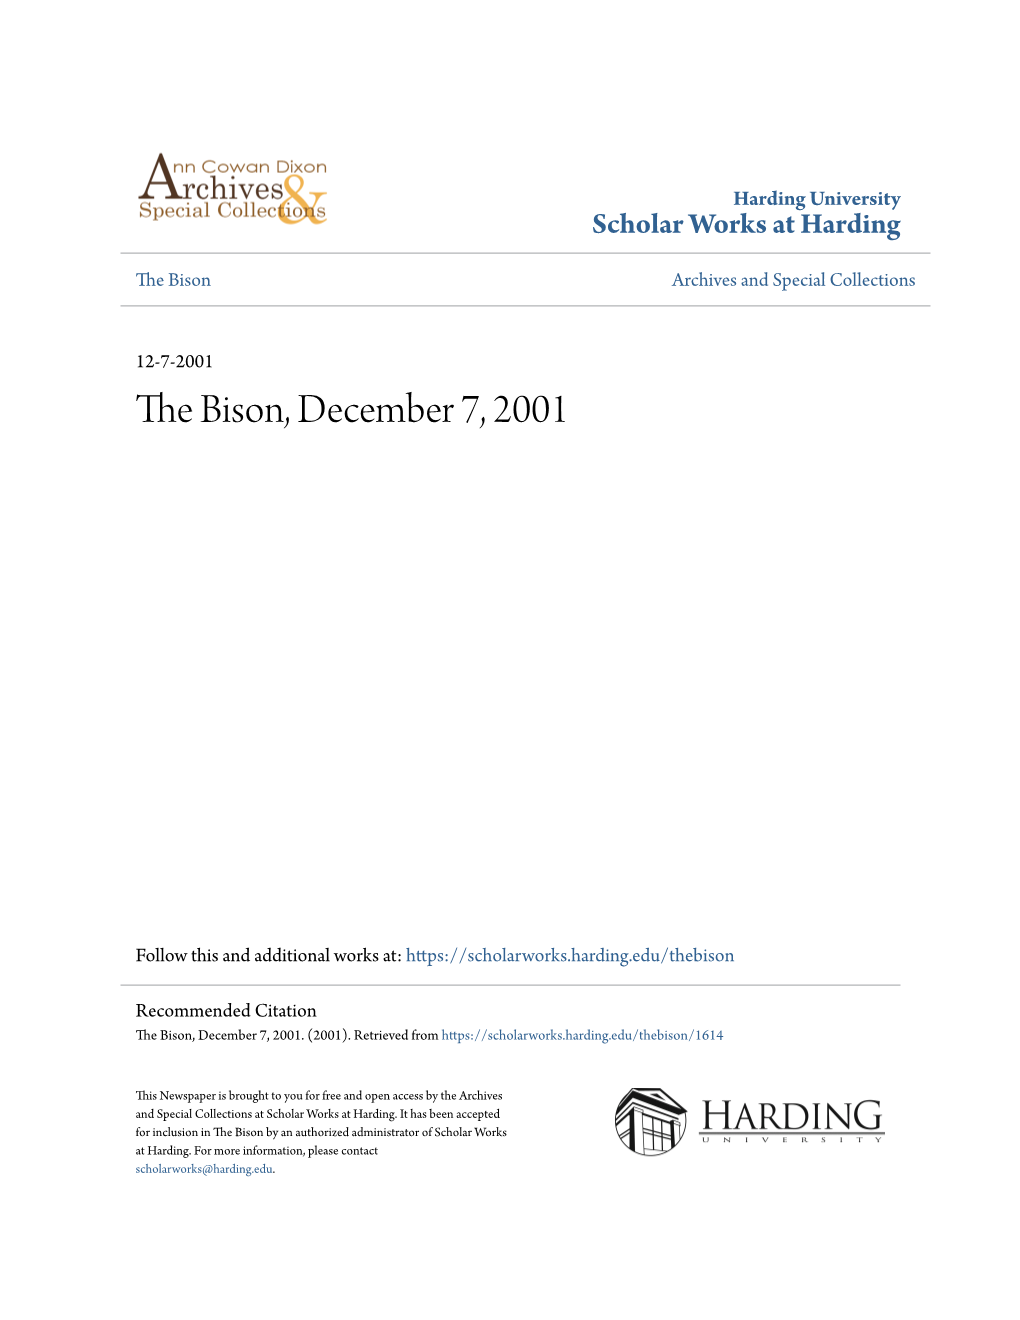 The Bison, December 7, 2001